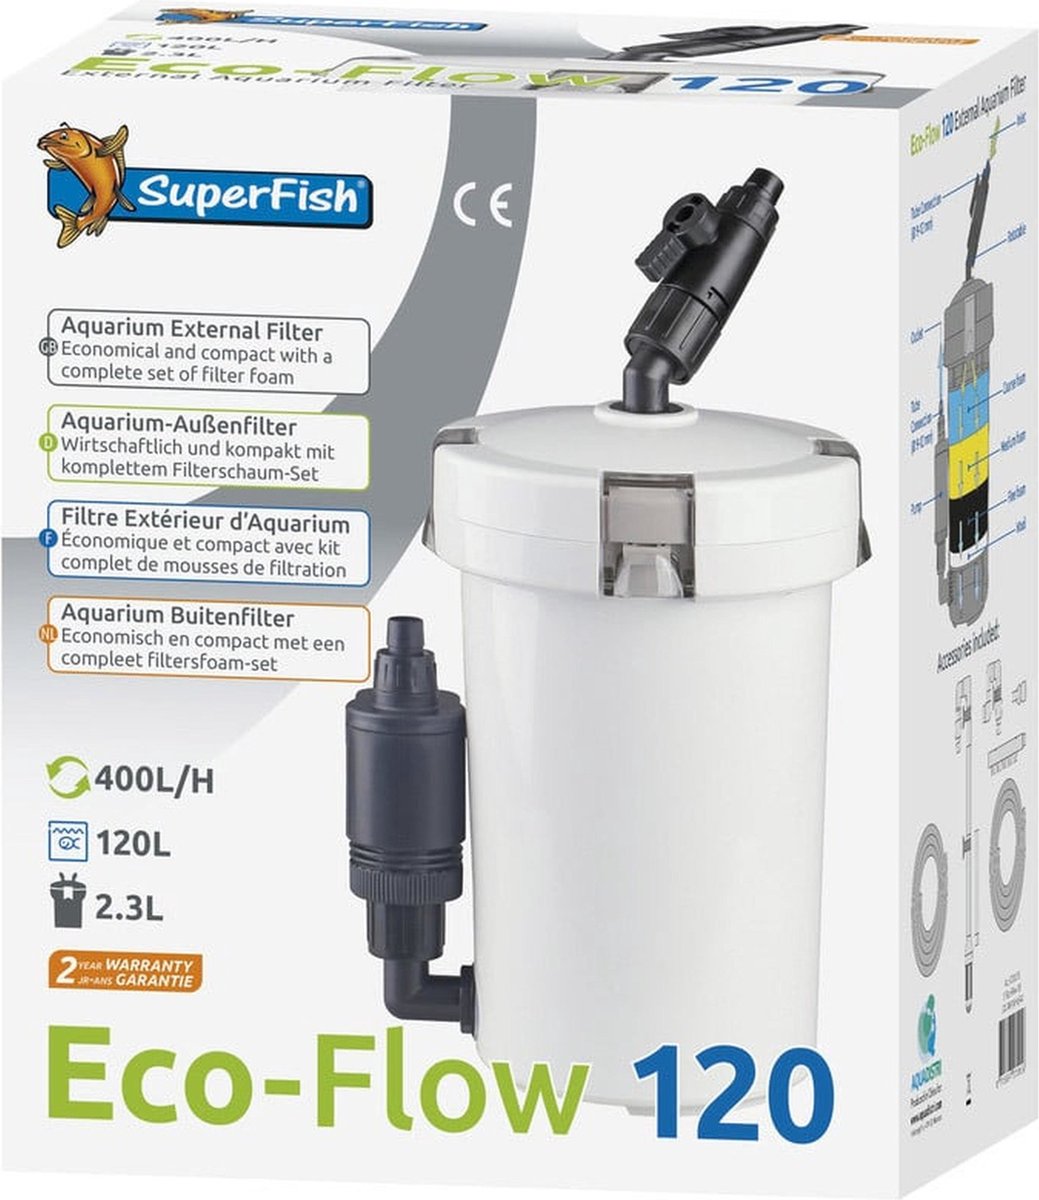 Eco-Flow 120 Aquarium - SuperFish bol.com